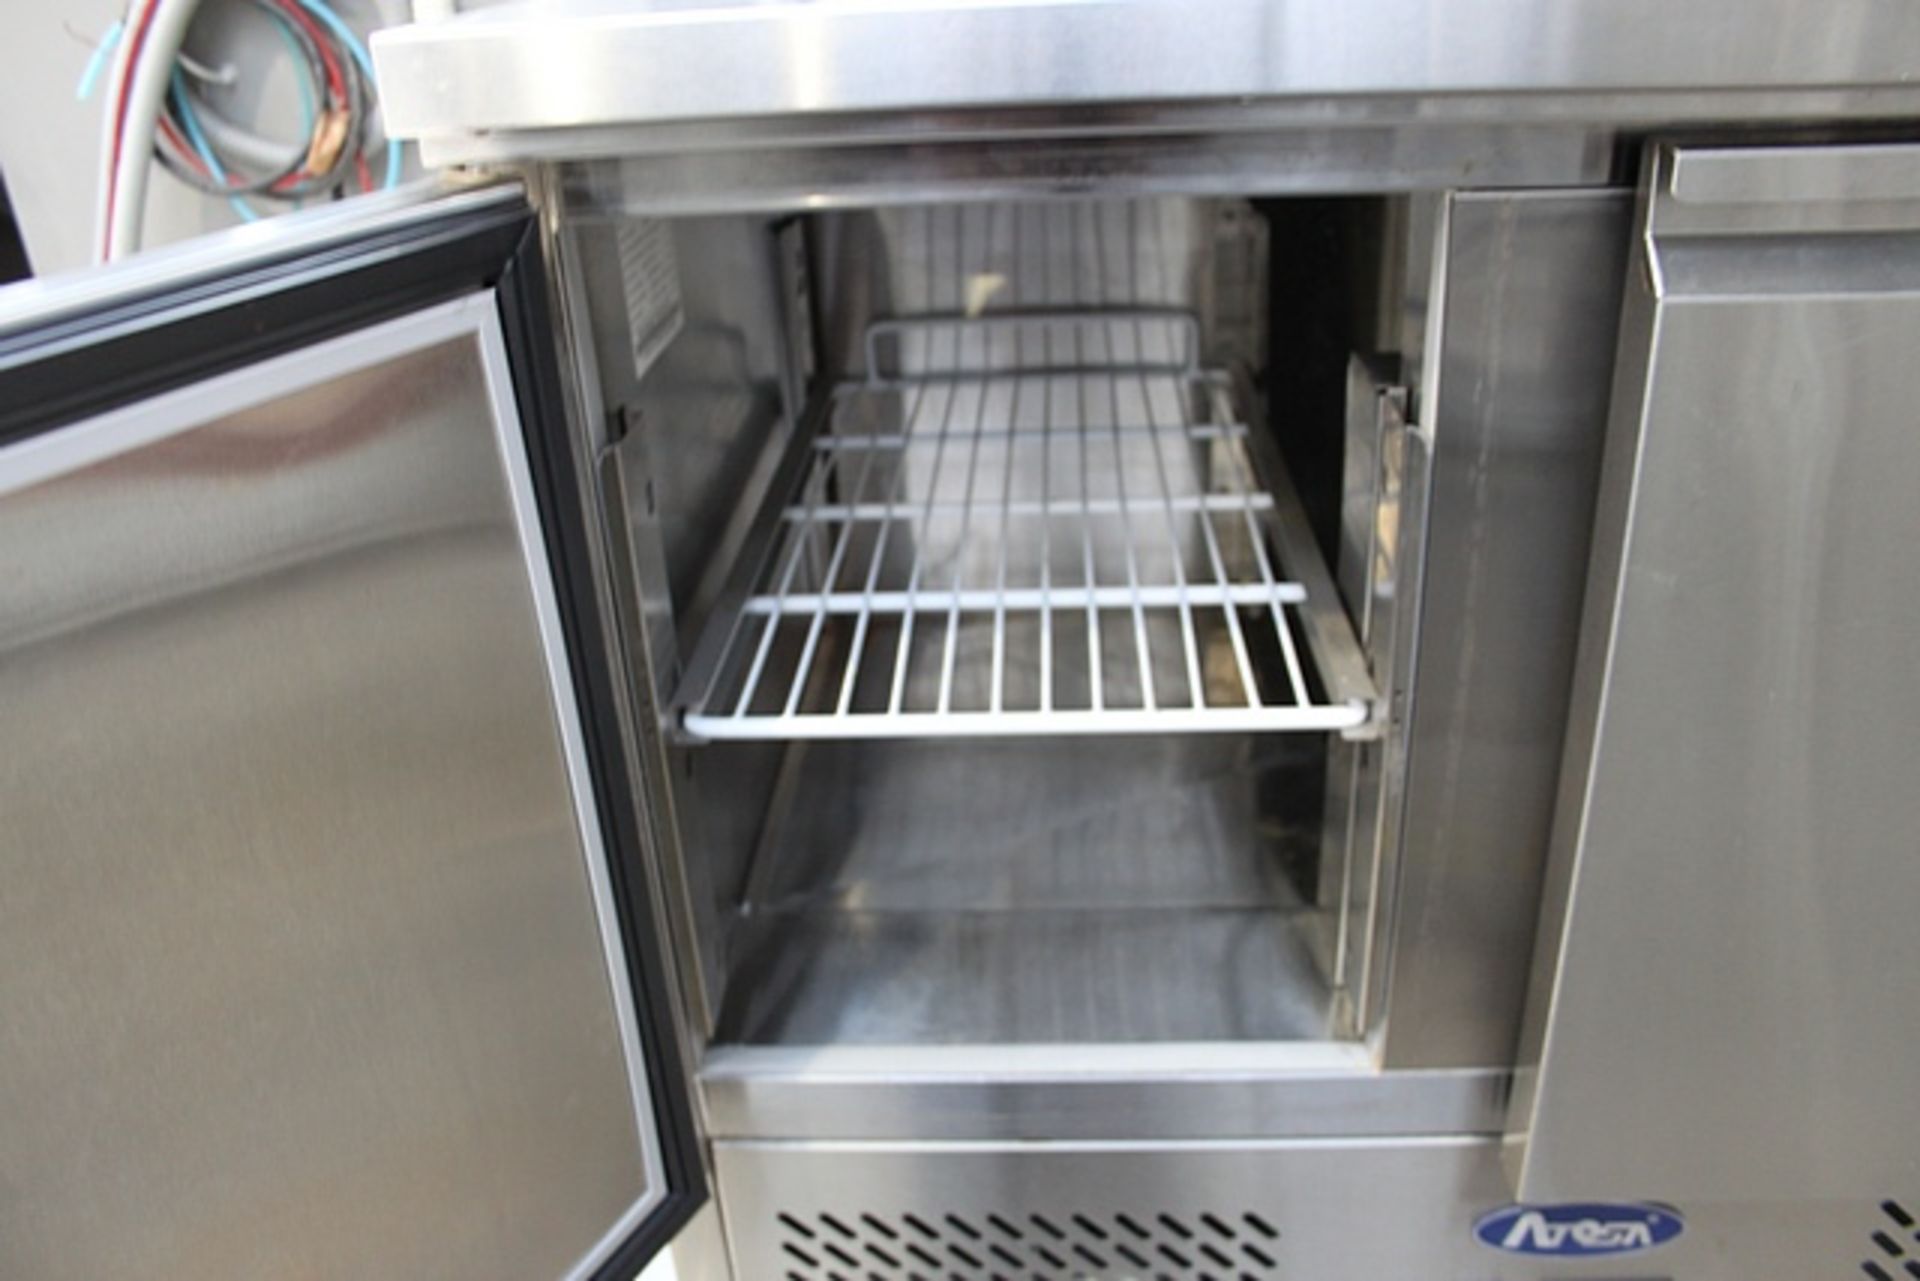 Atosa ESL 3801 fridge two door saladette temperature(°C): +2°C - +8°C digital temperature control - Image 2 of 2